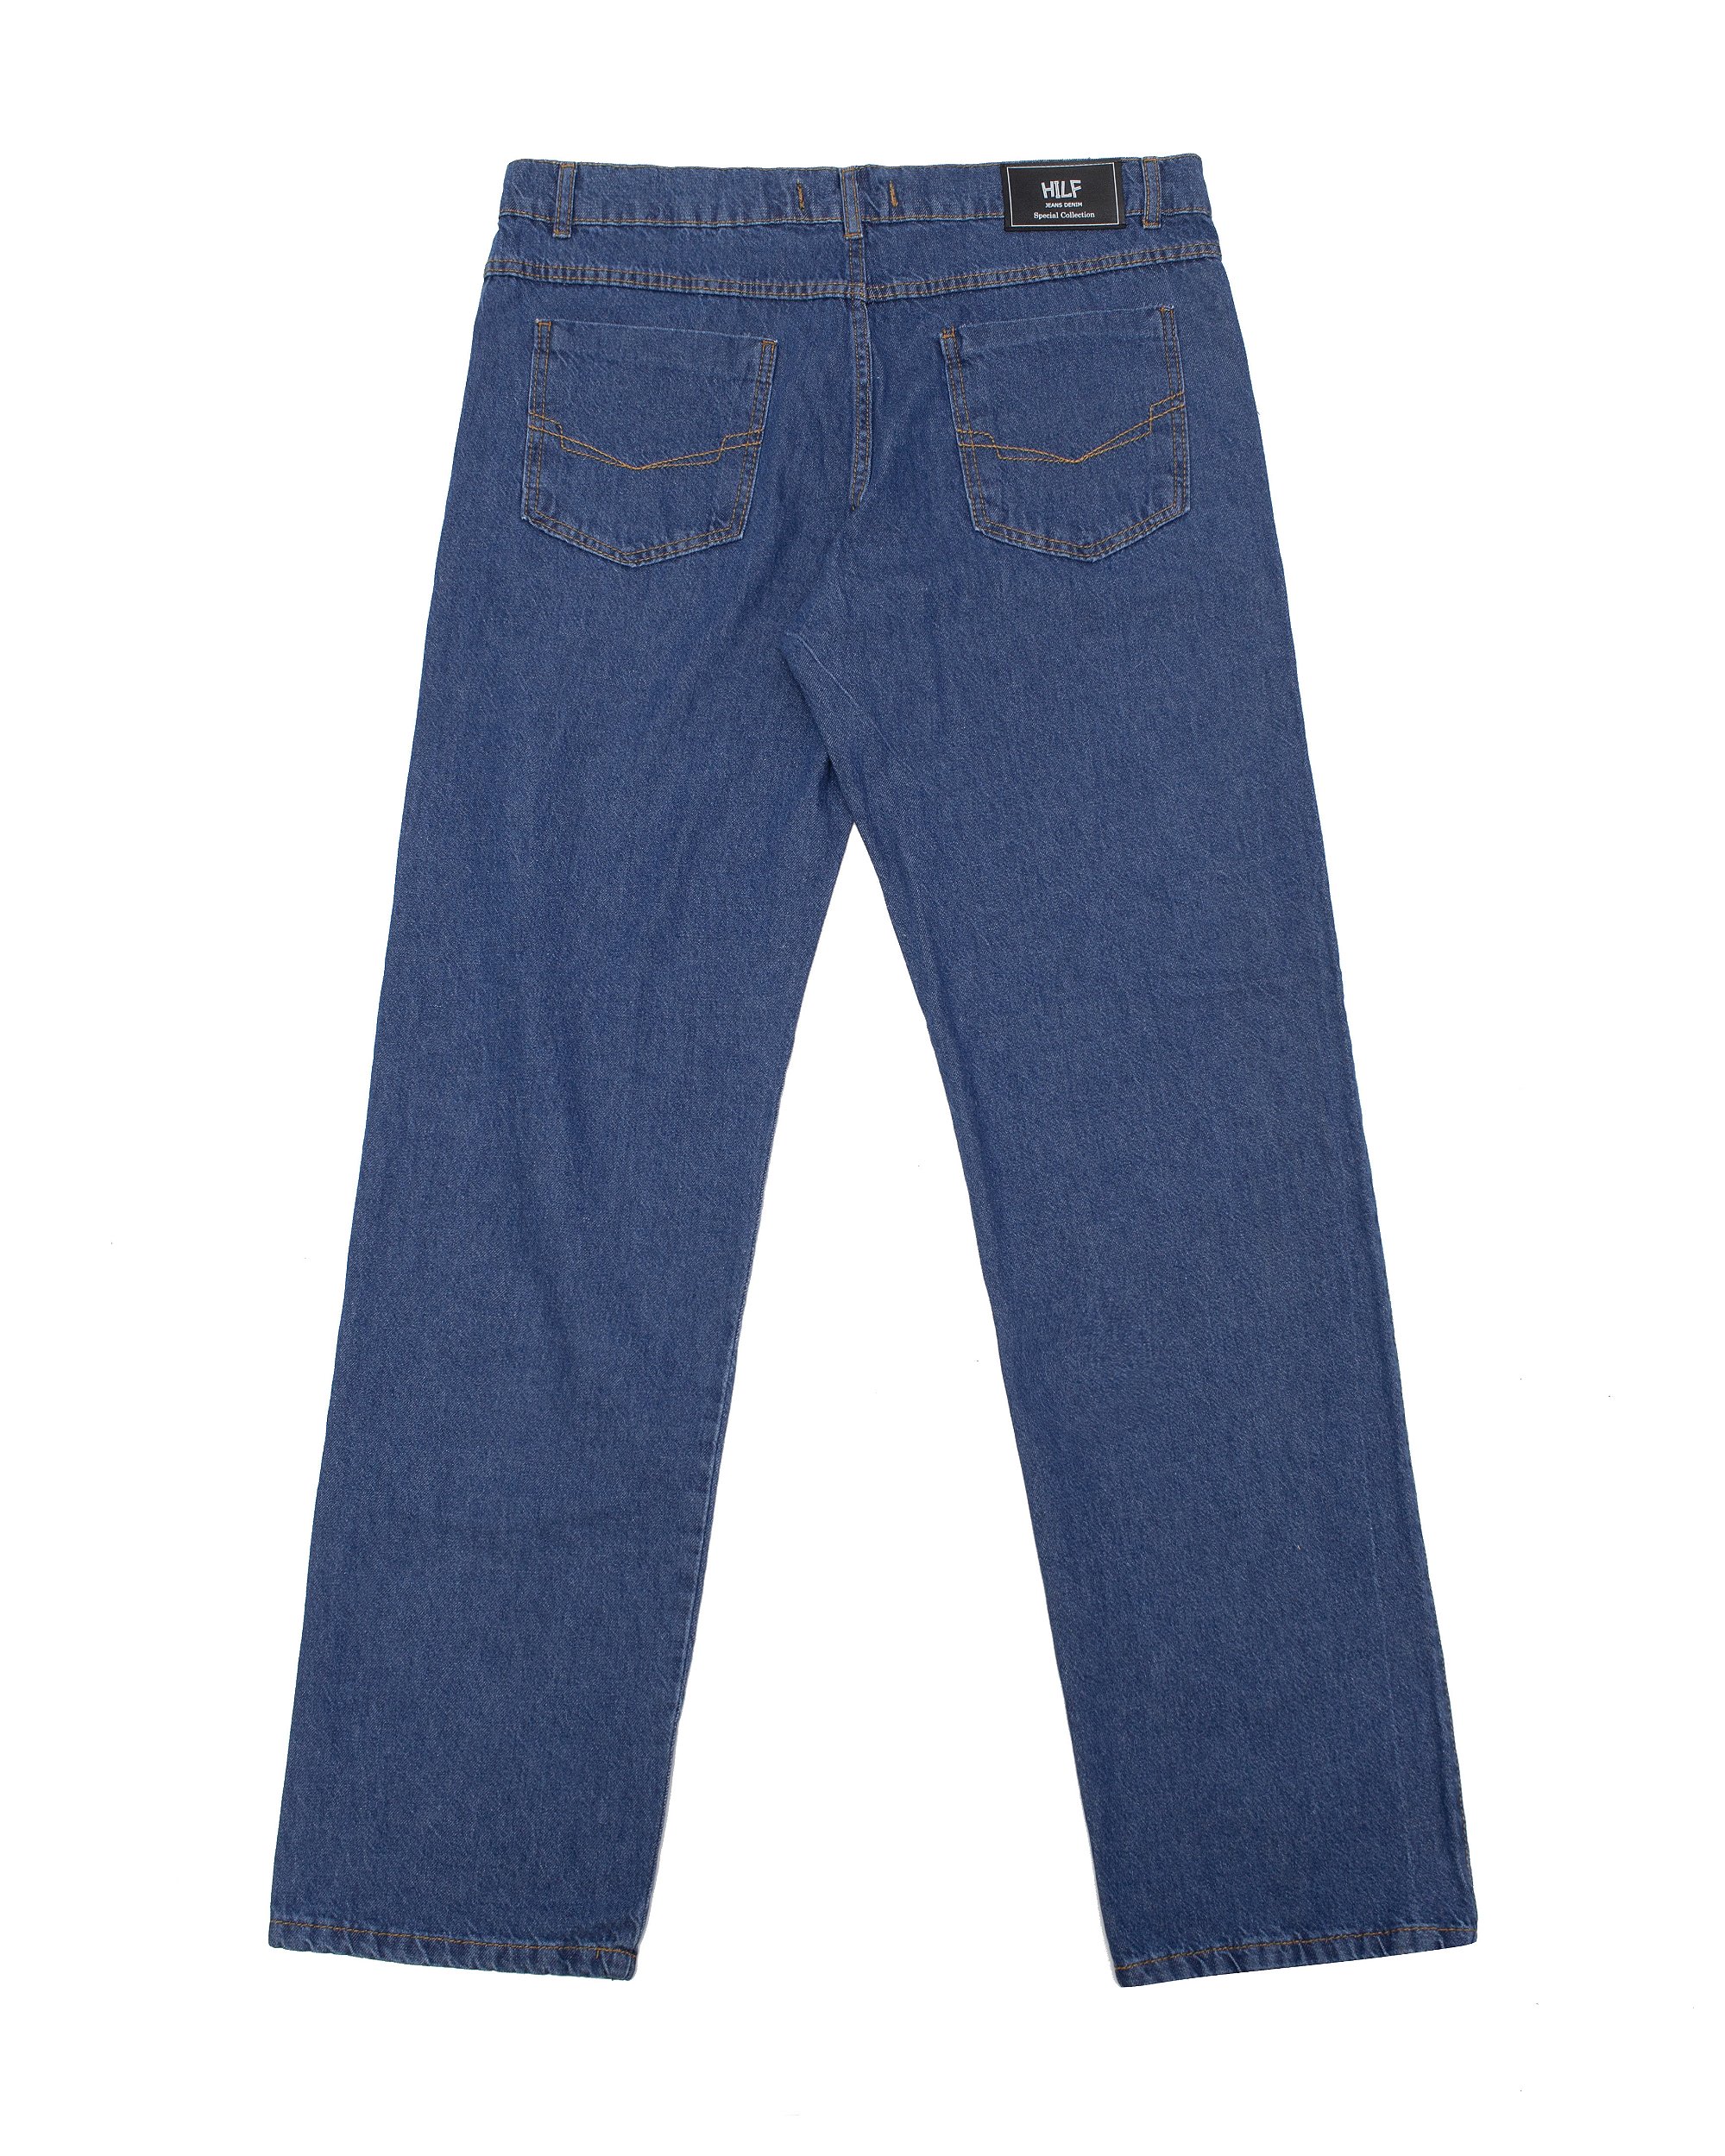 Calça Balão jeans intermediária - Hilf